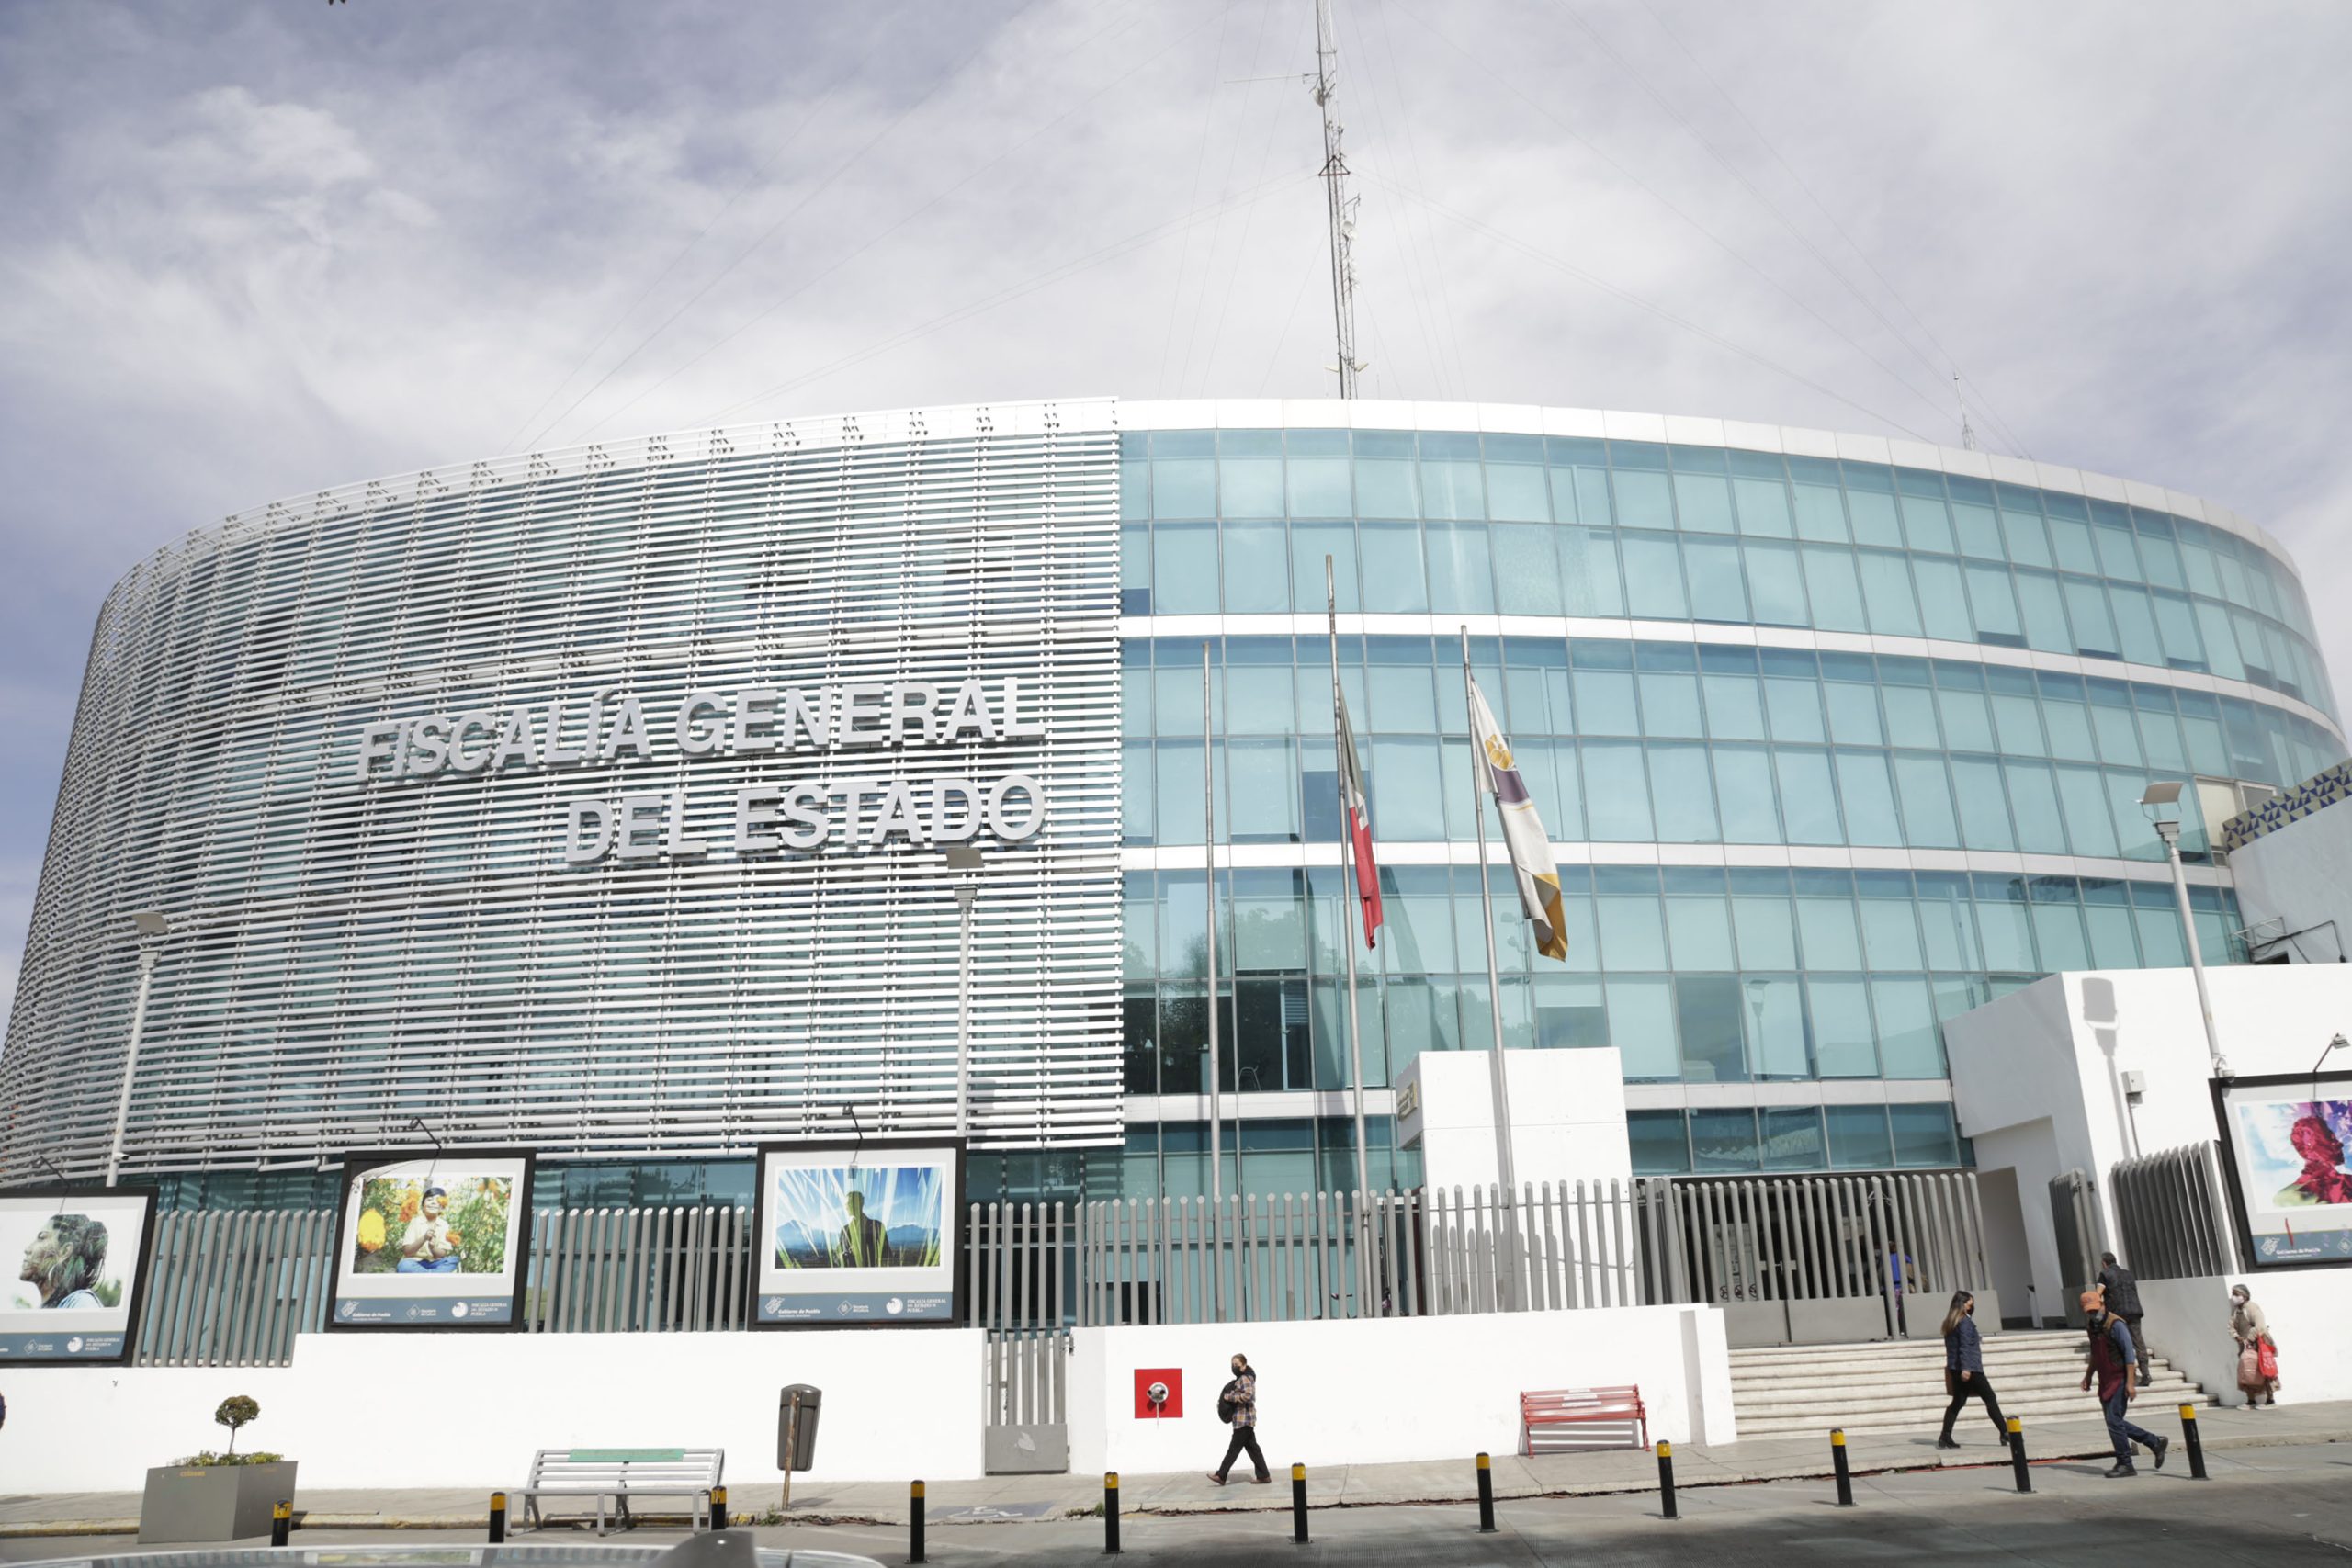 Fraude, delito con más denuncias anónimas en Puebla